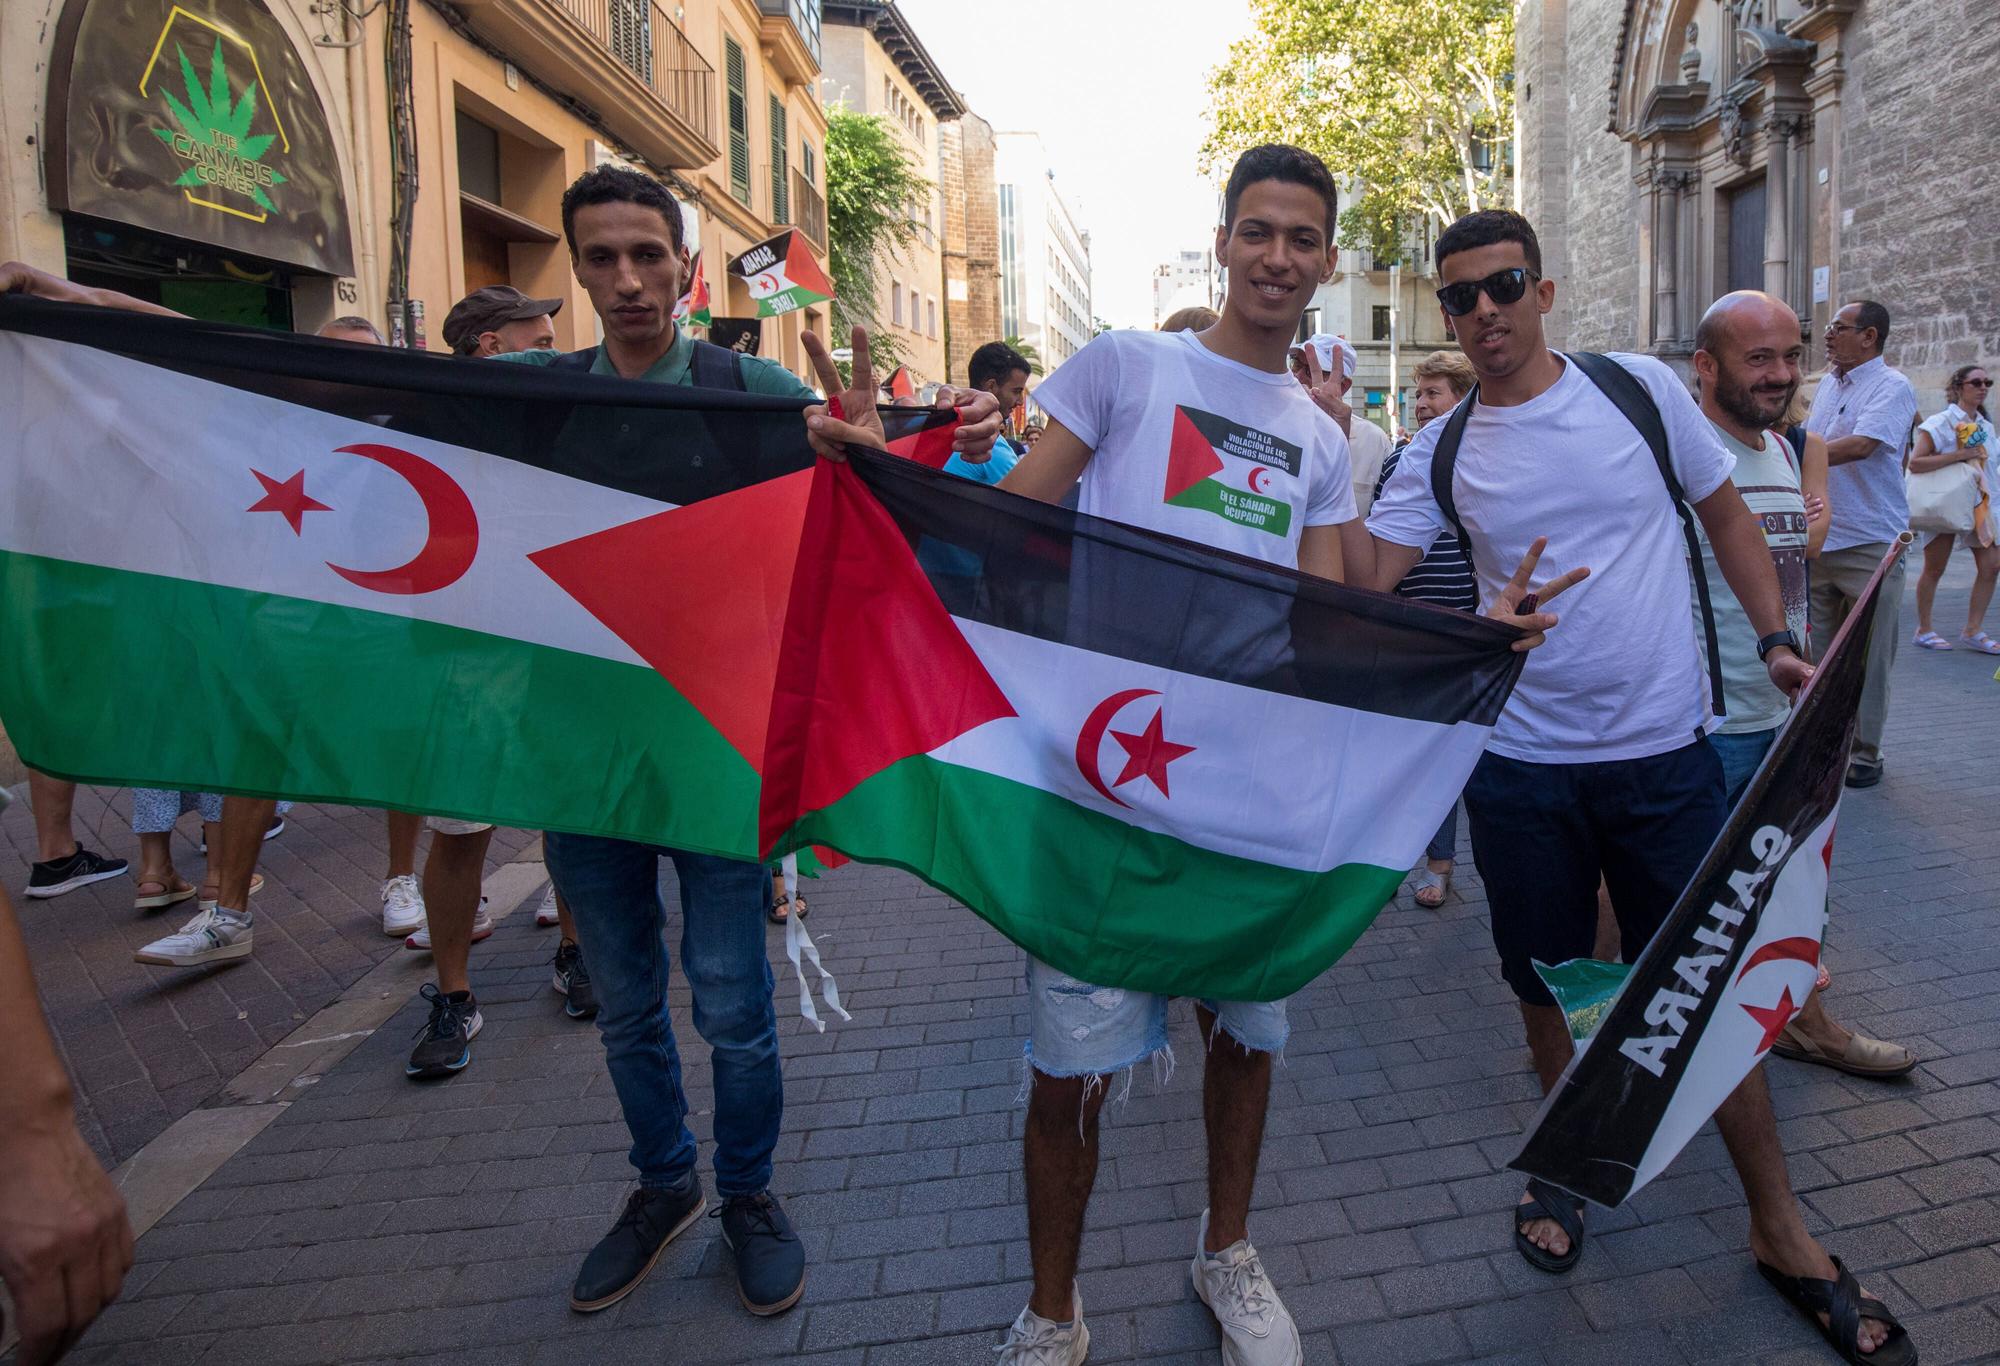 Más de 300 personas piden un Sáhara libre en Palma